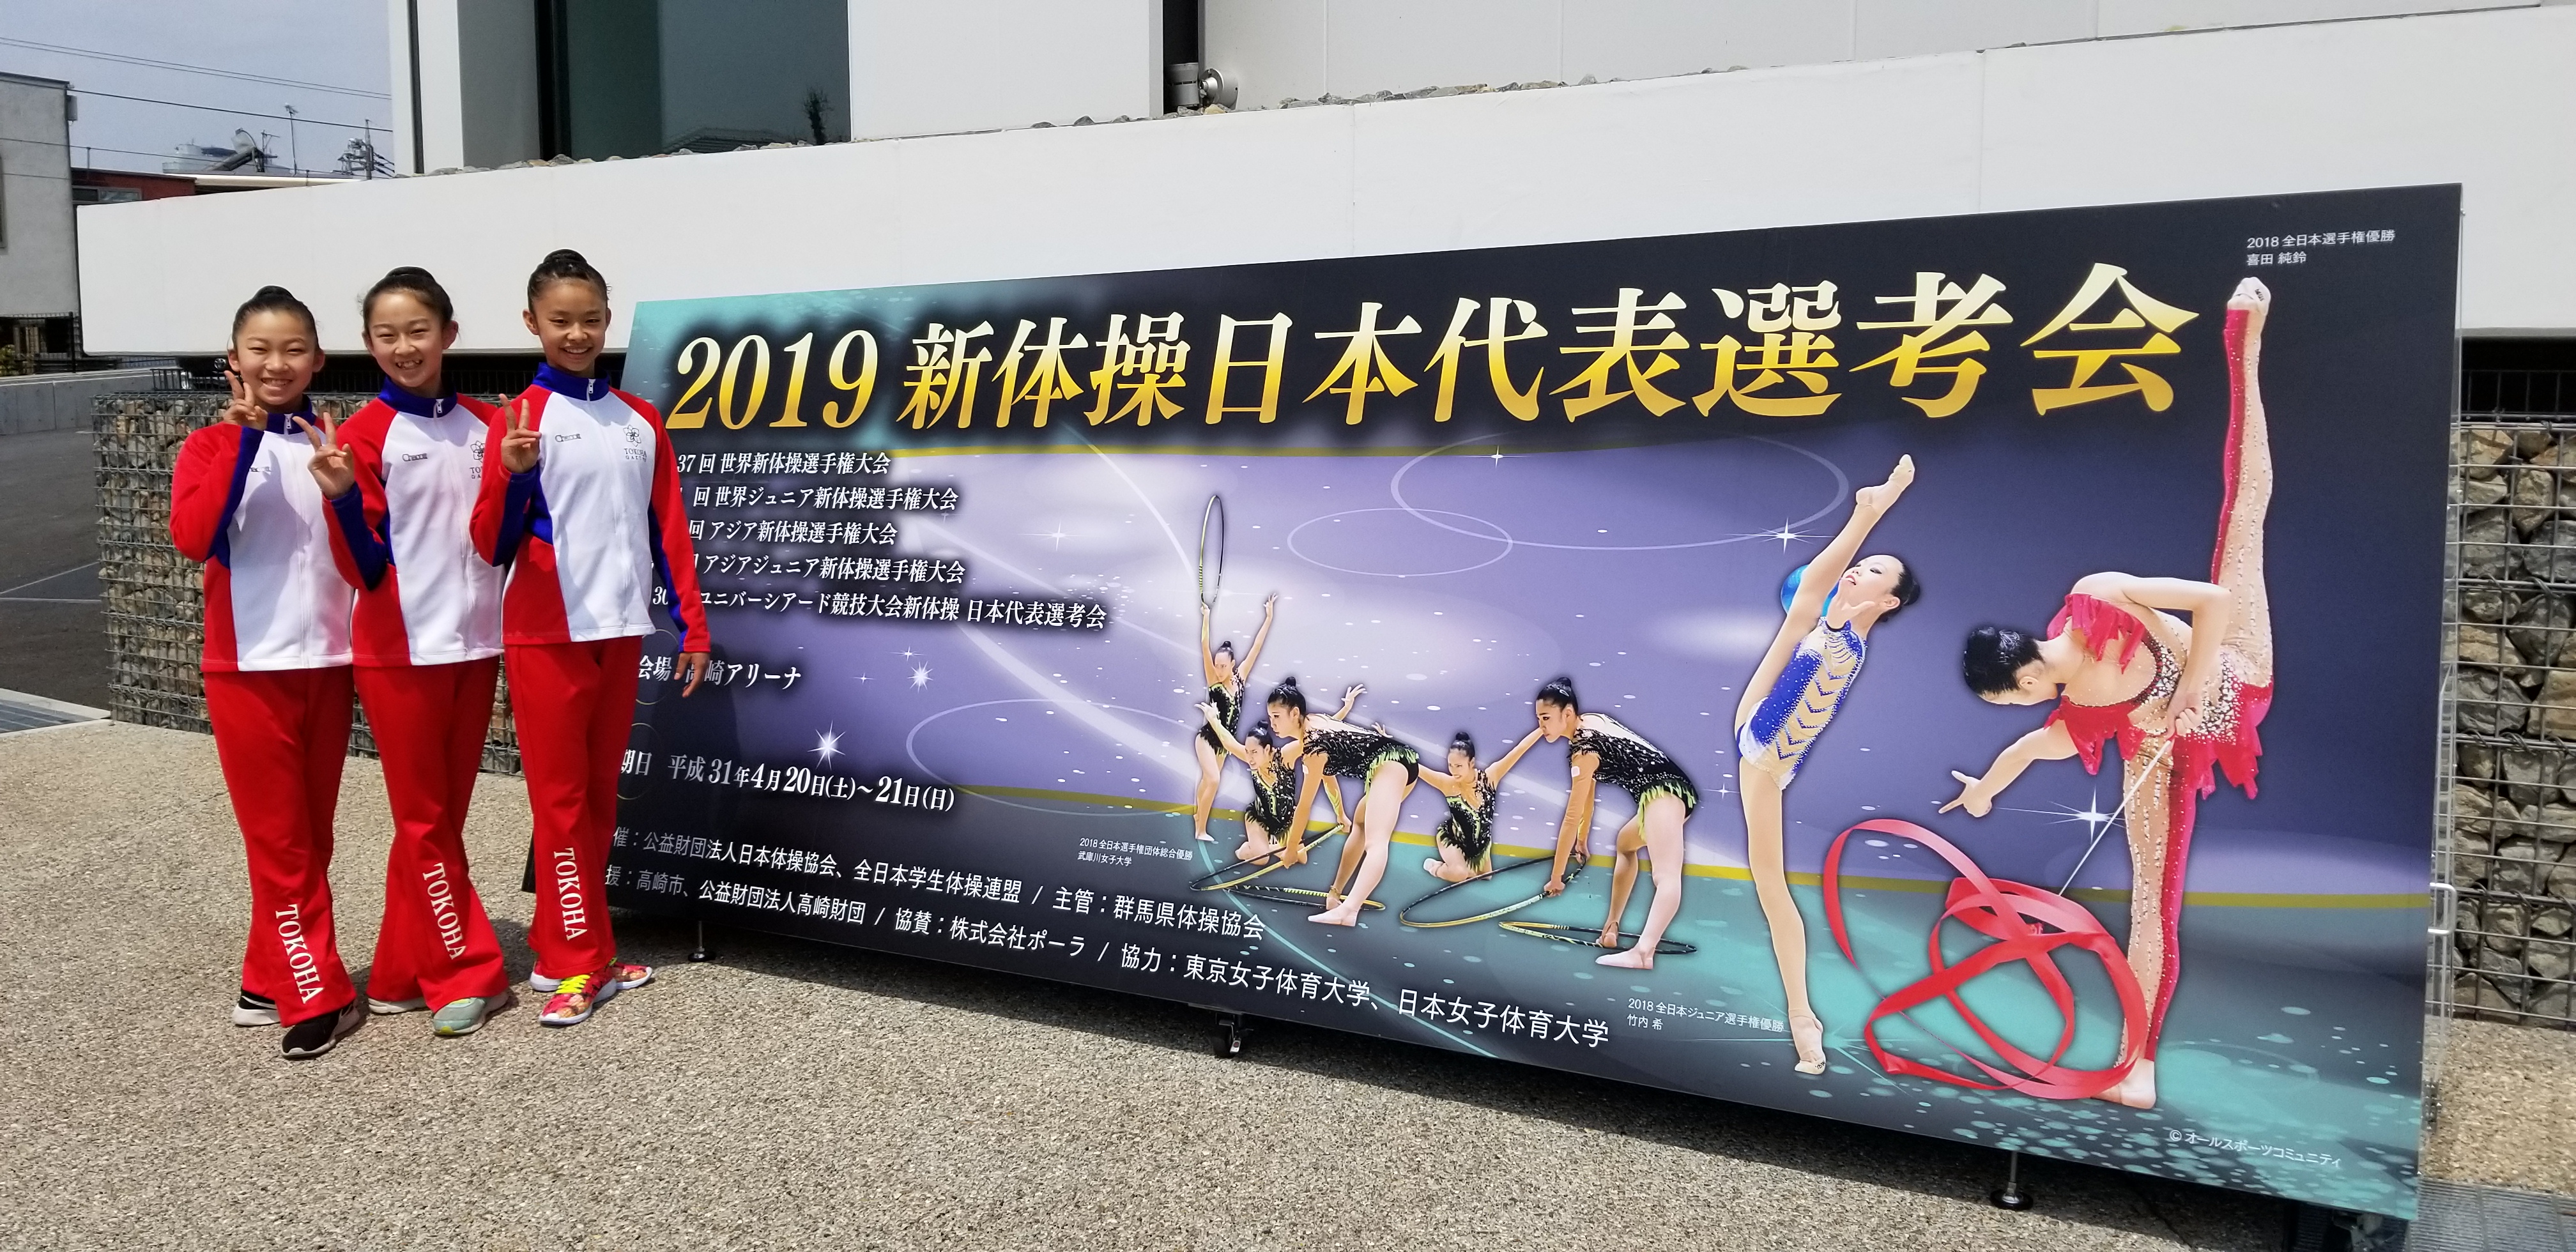 2019新体操日本代表選考会 静岡rg新体操クラブ